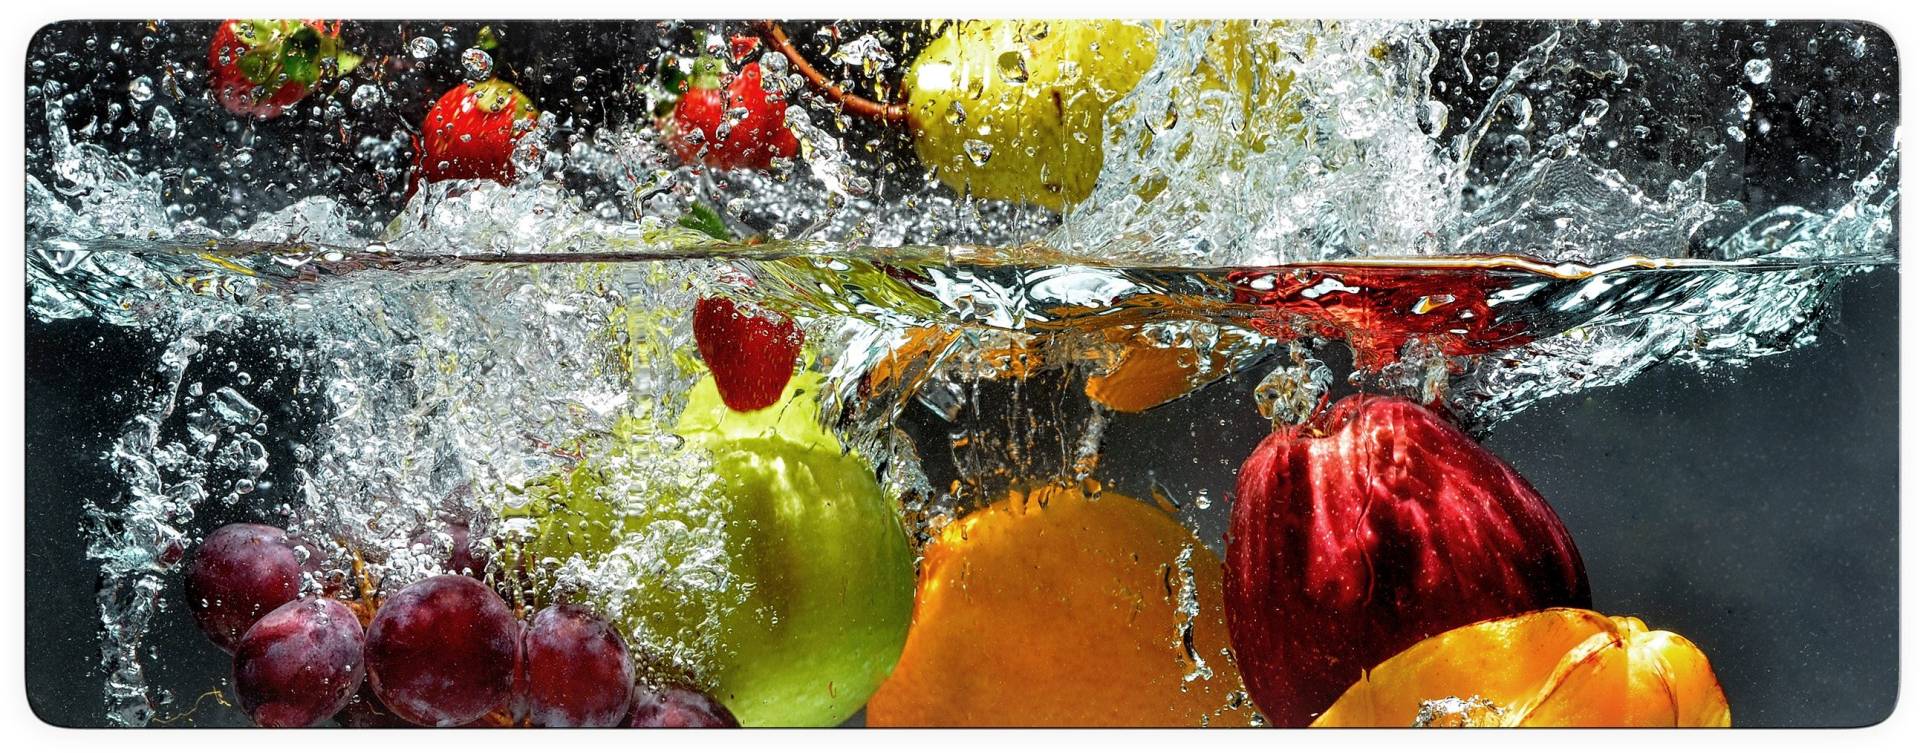 Wall-Art Glasbild »Erfrischendes Obst« von Wall-Art